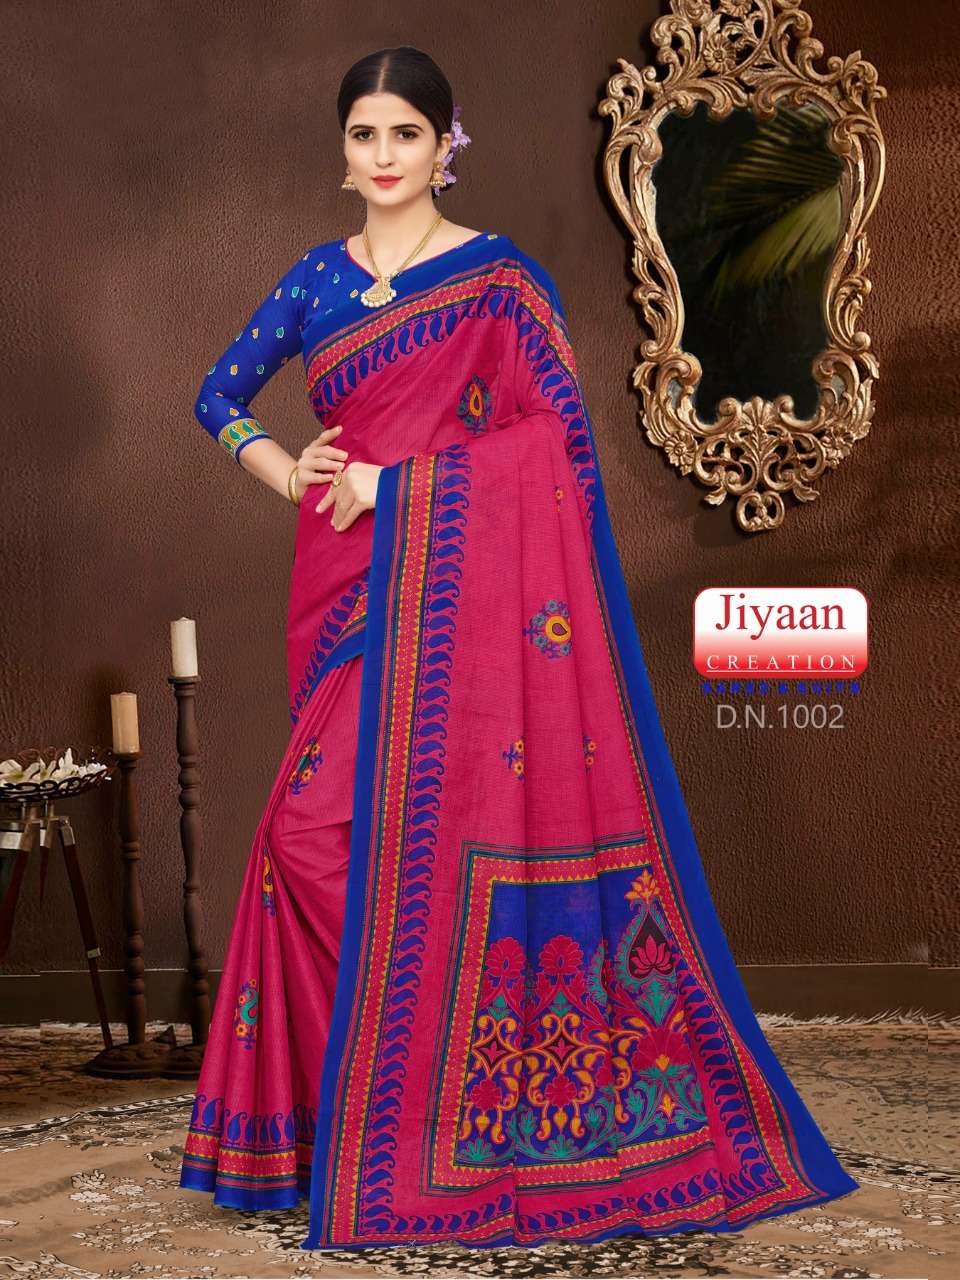 Miss India By Jiyan Creation Sarees Designer Wholesale Online Sarees Set